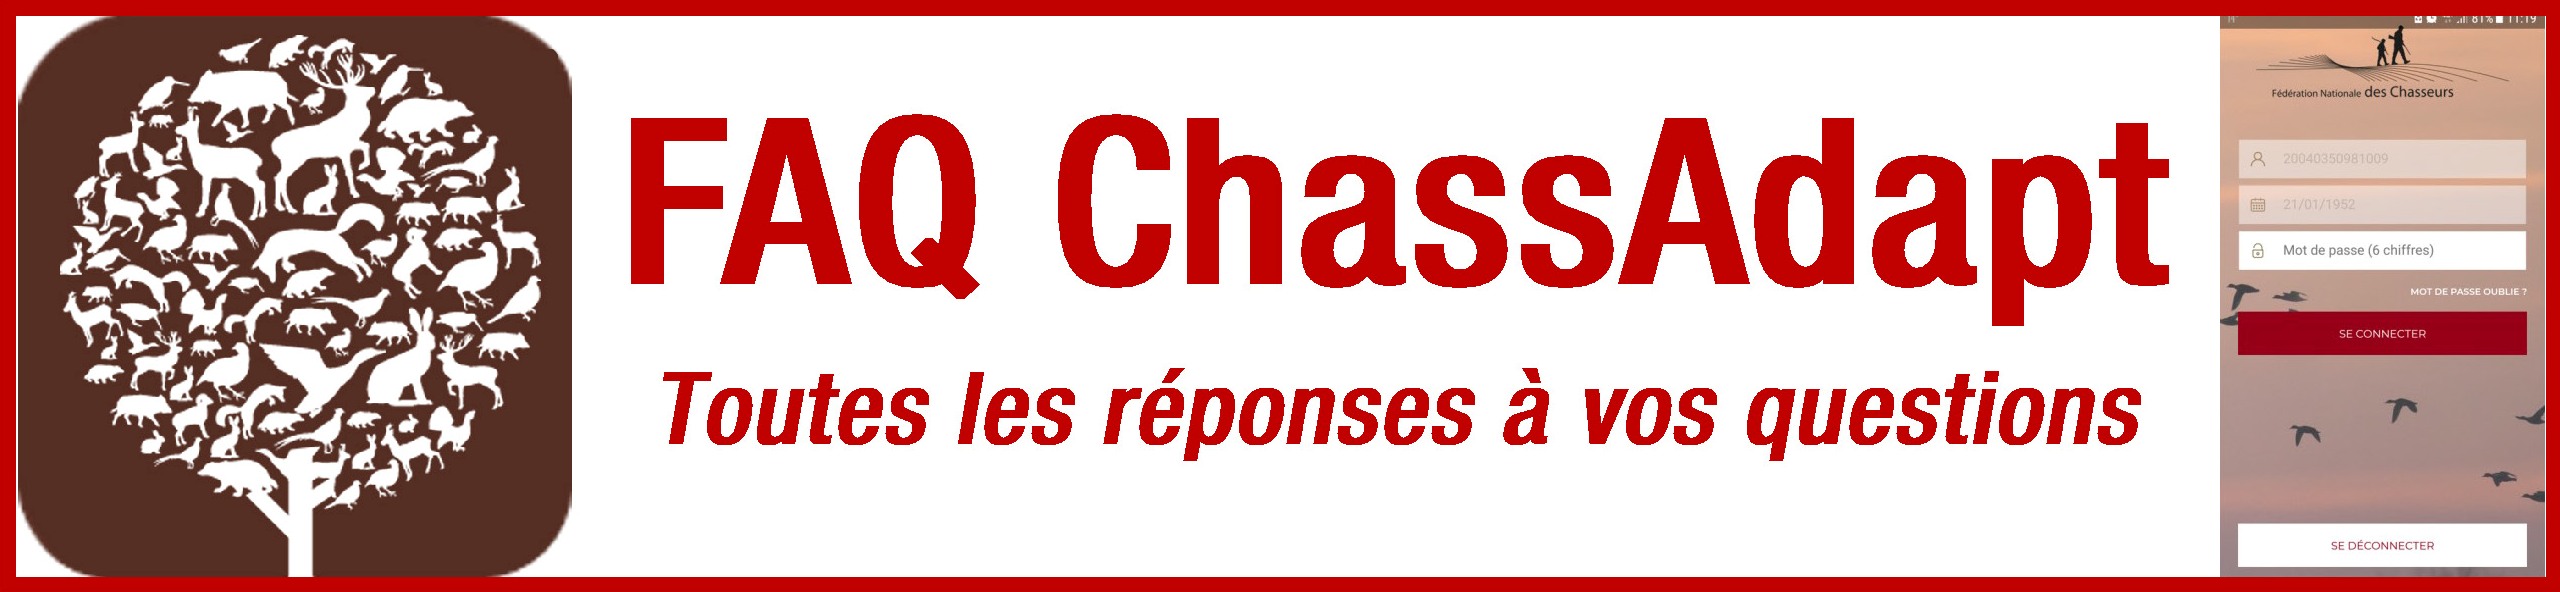 Logo FAQ ChassAdapt